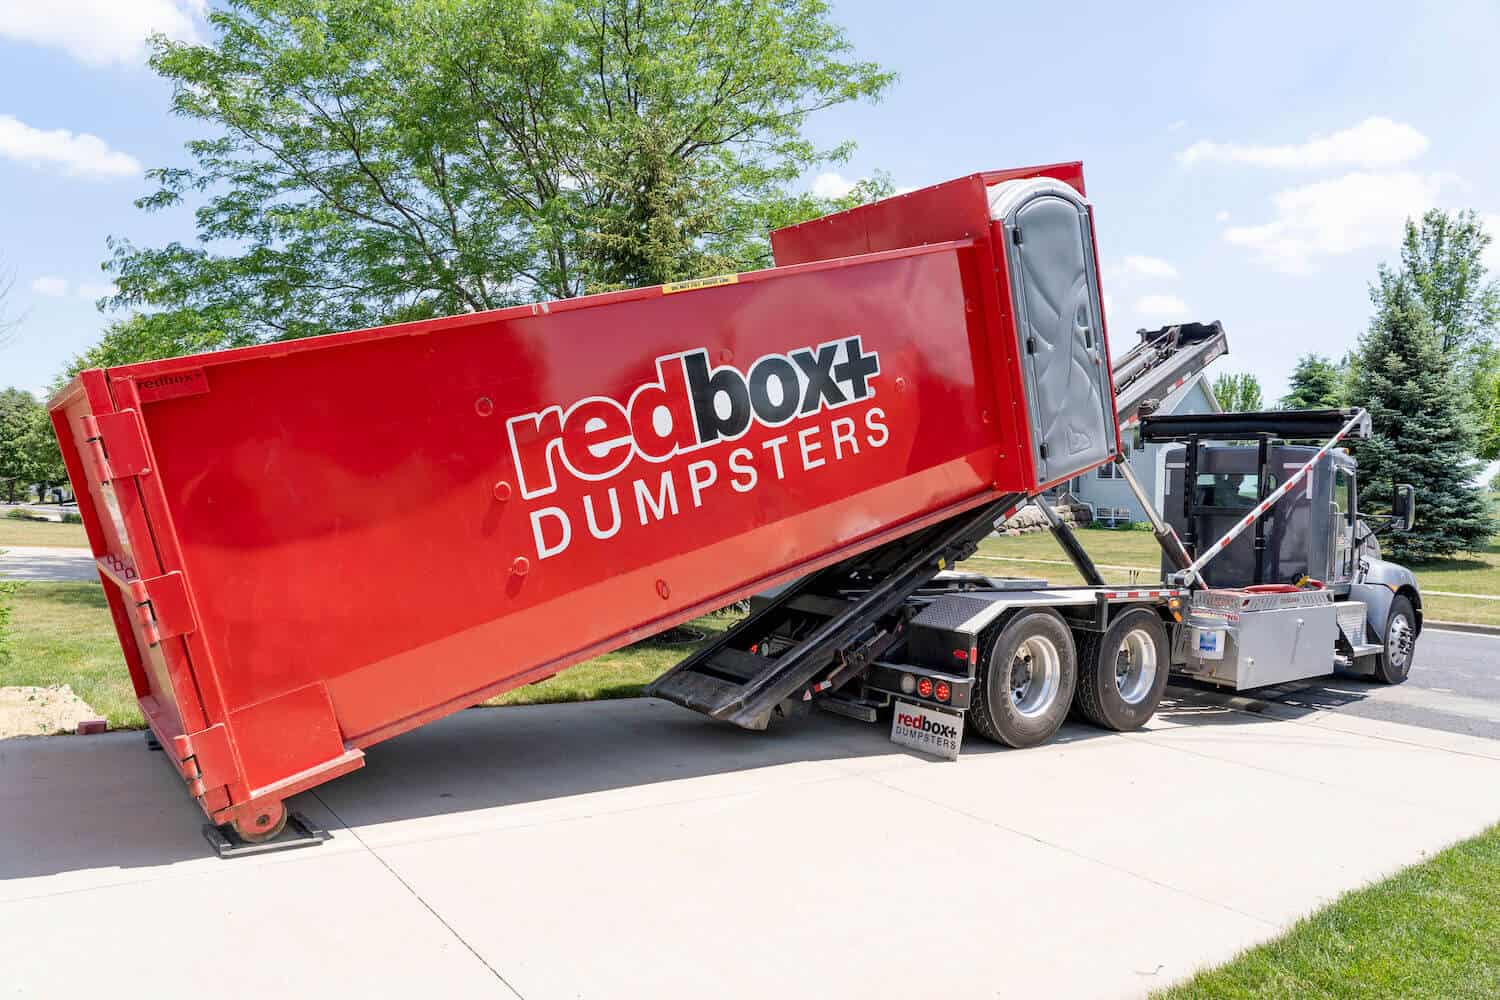 roll off dumpster rental in bucks county